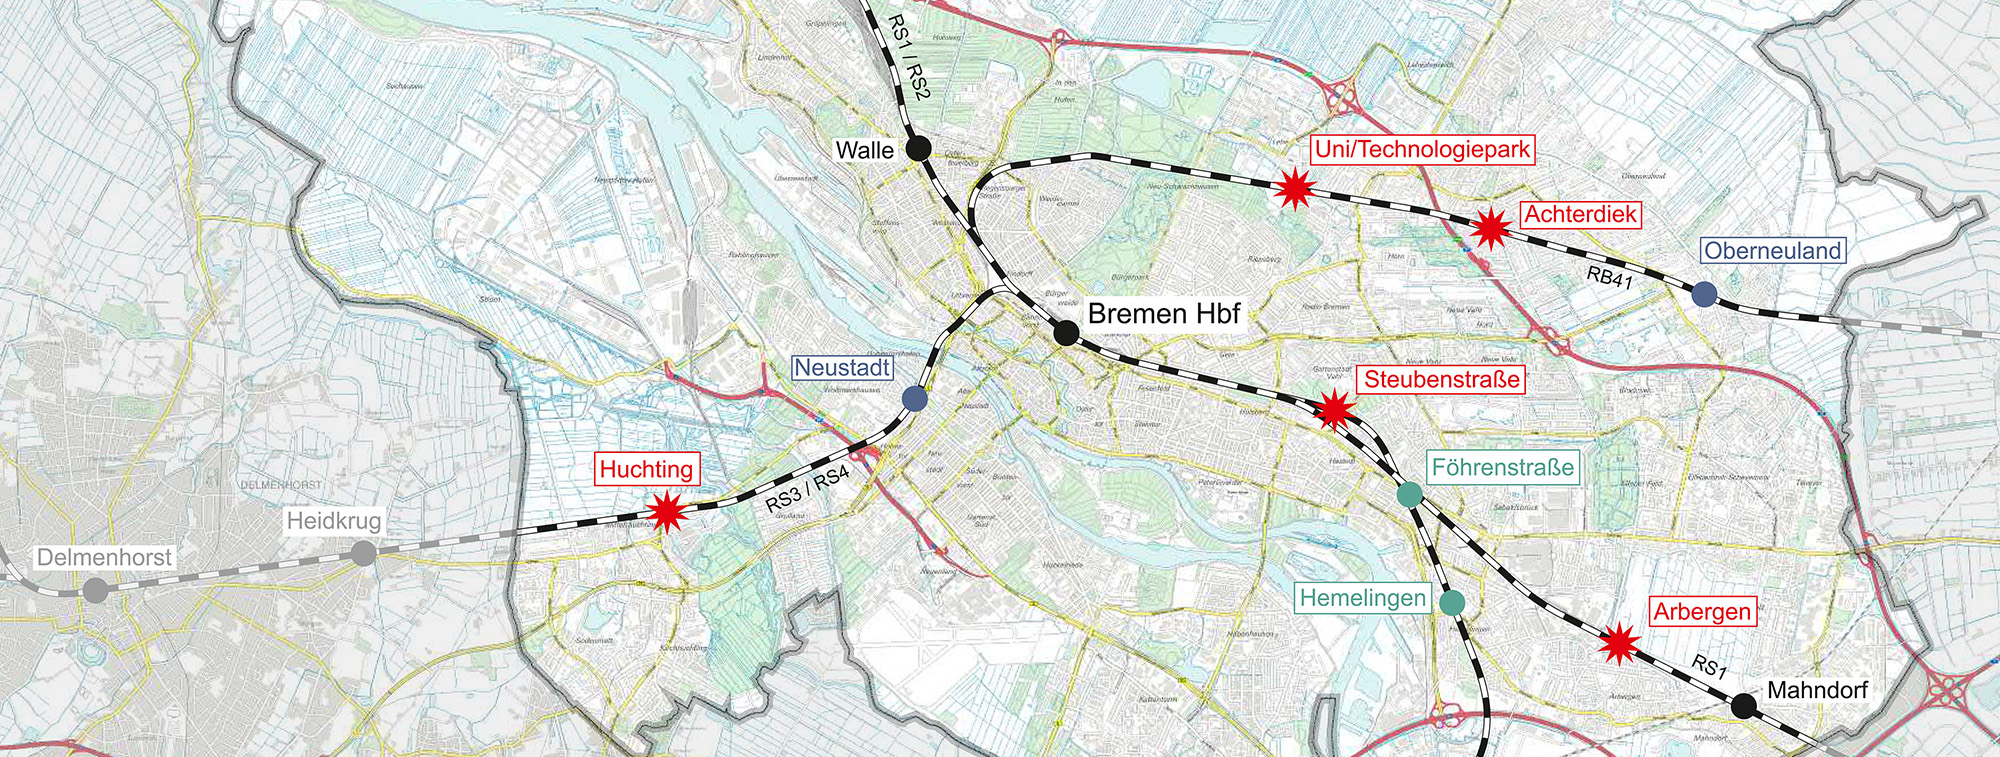 Barrierefreier Ausbau sowie Neuanlage von Bahnhaltepunkten in Bremen (Ausschnitt)